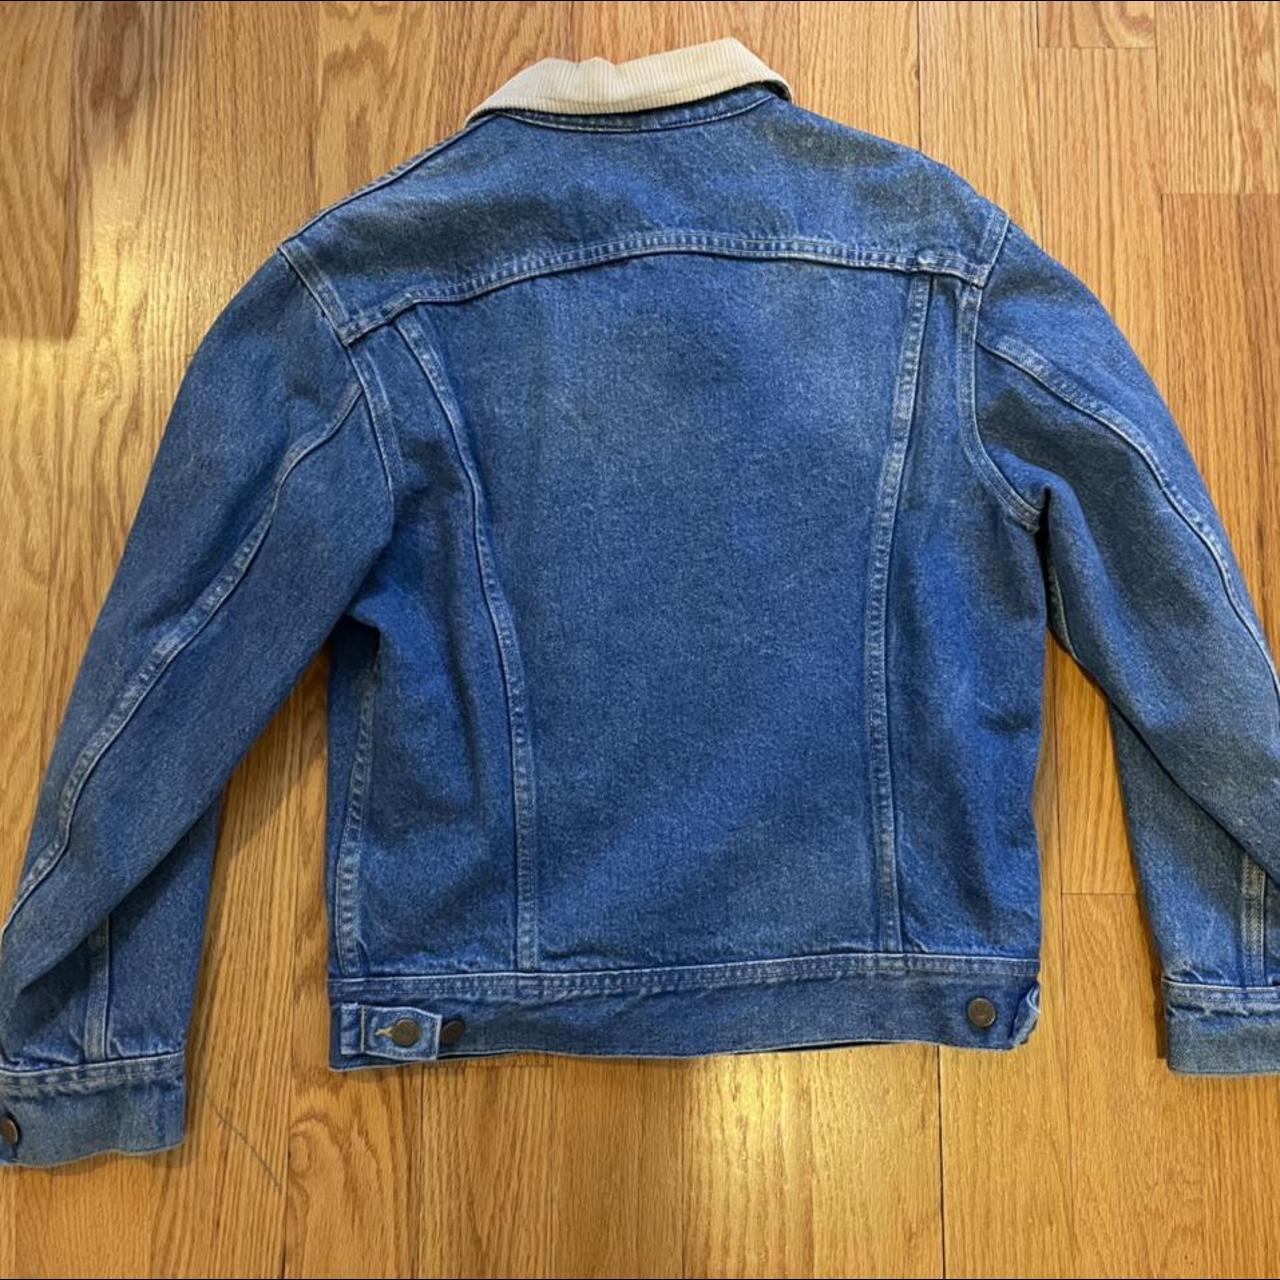 Vintage lee denim jacket mens 70s 80s Pit to... - Depop